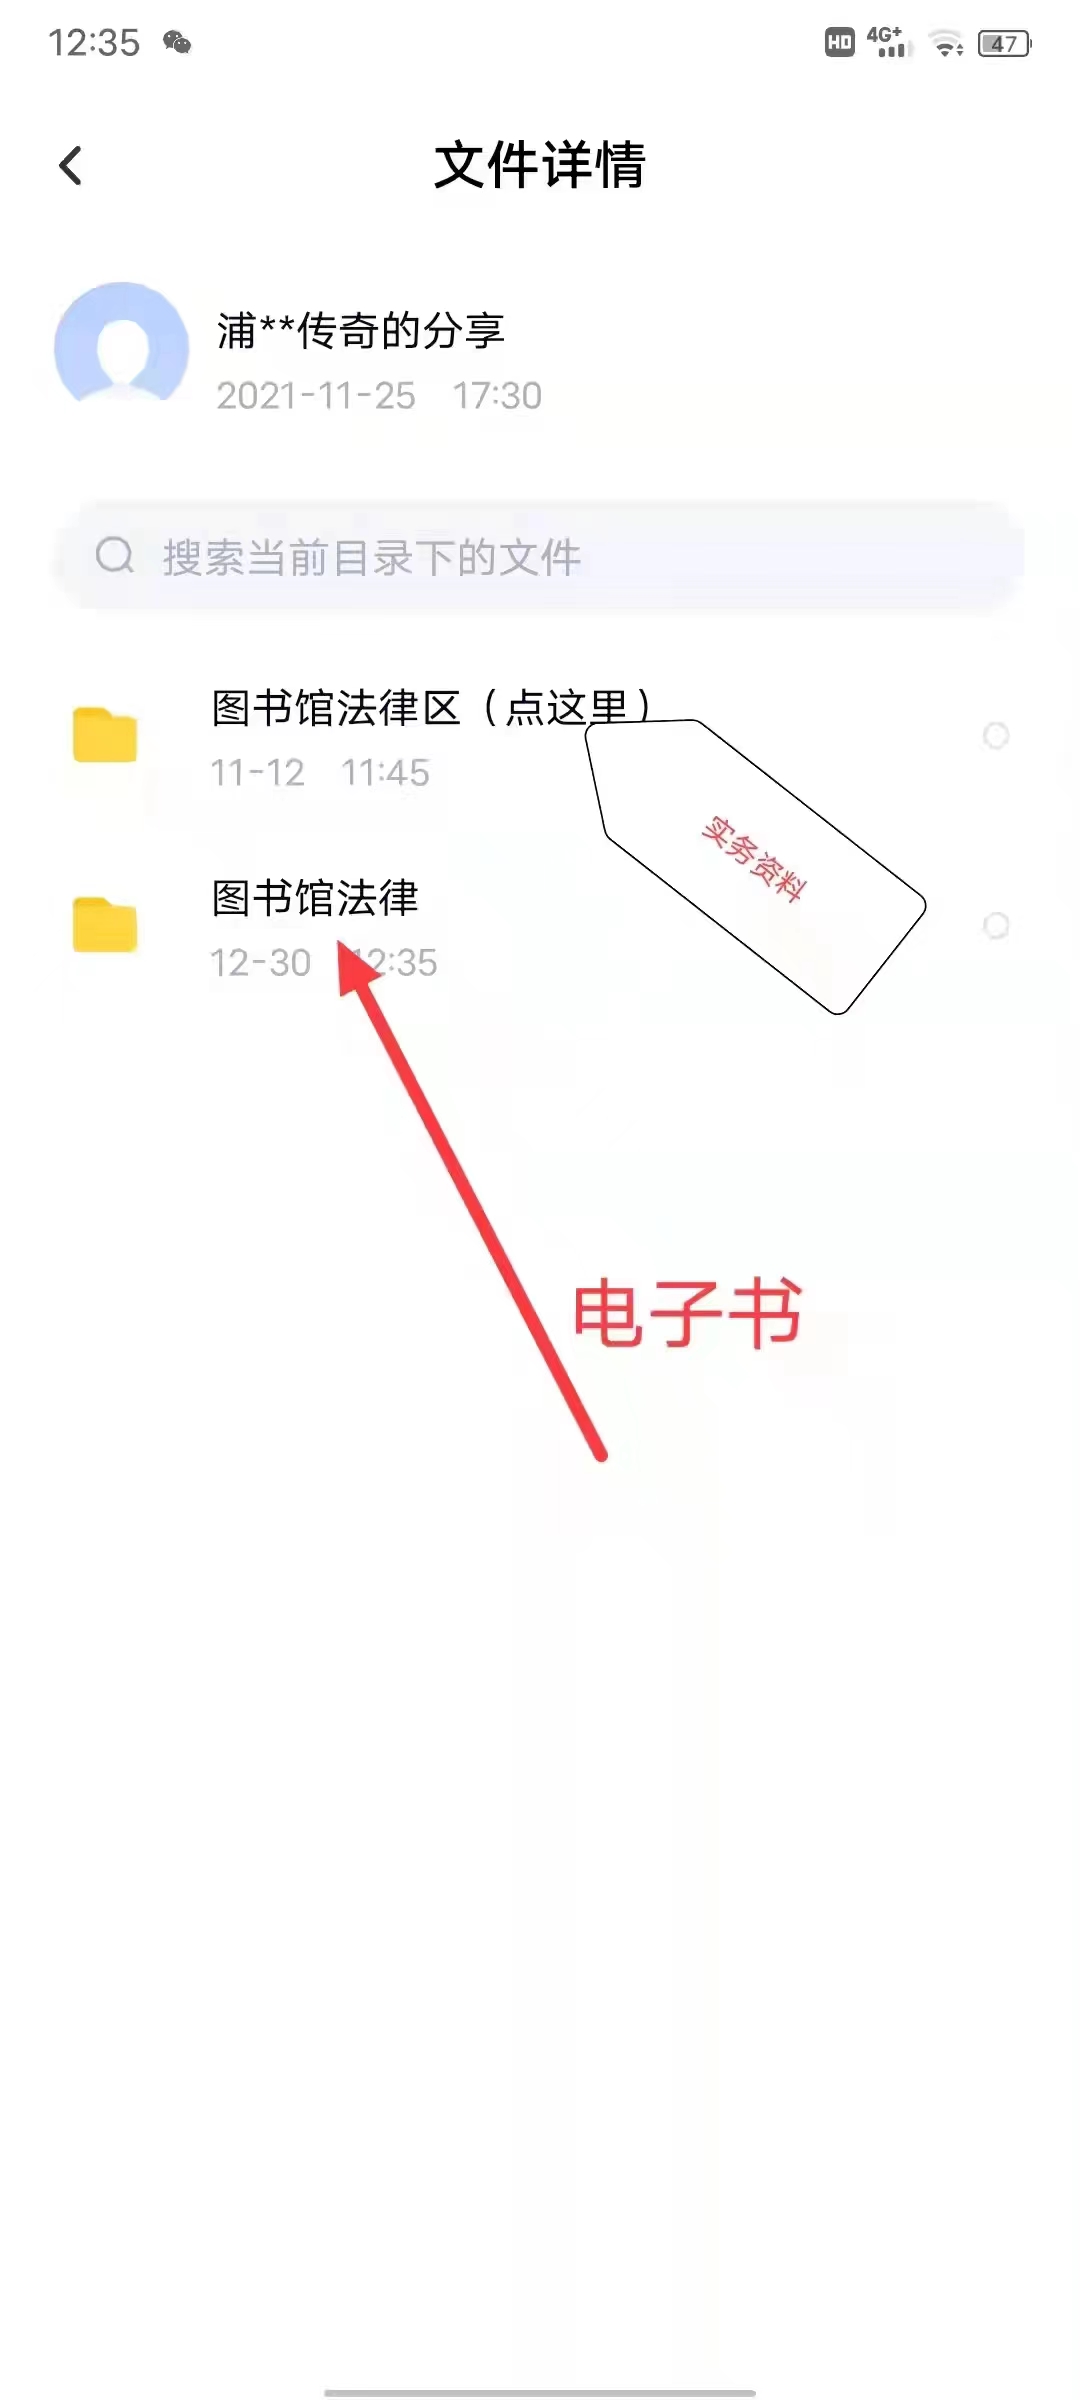 【法律】【PDF】515 合同诈骗罪案件办理指引 202210 张庆彬,程雷